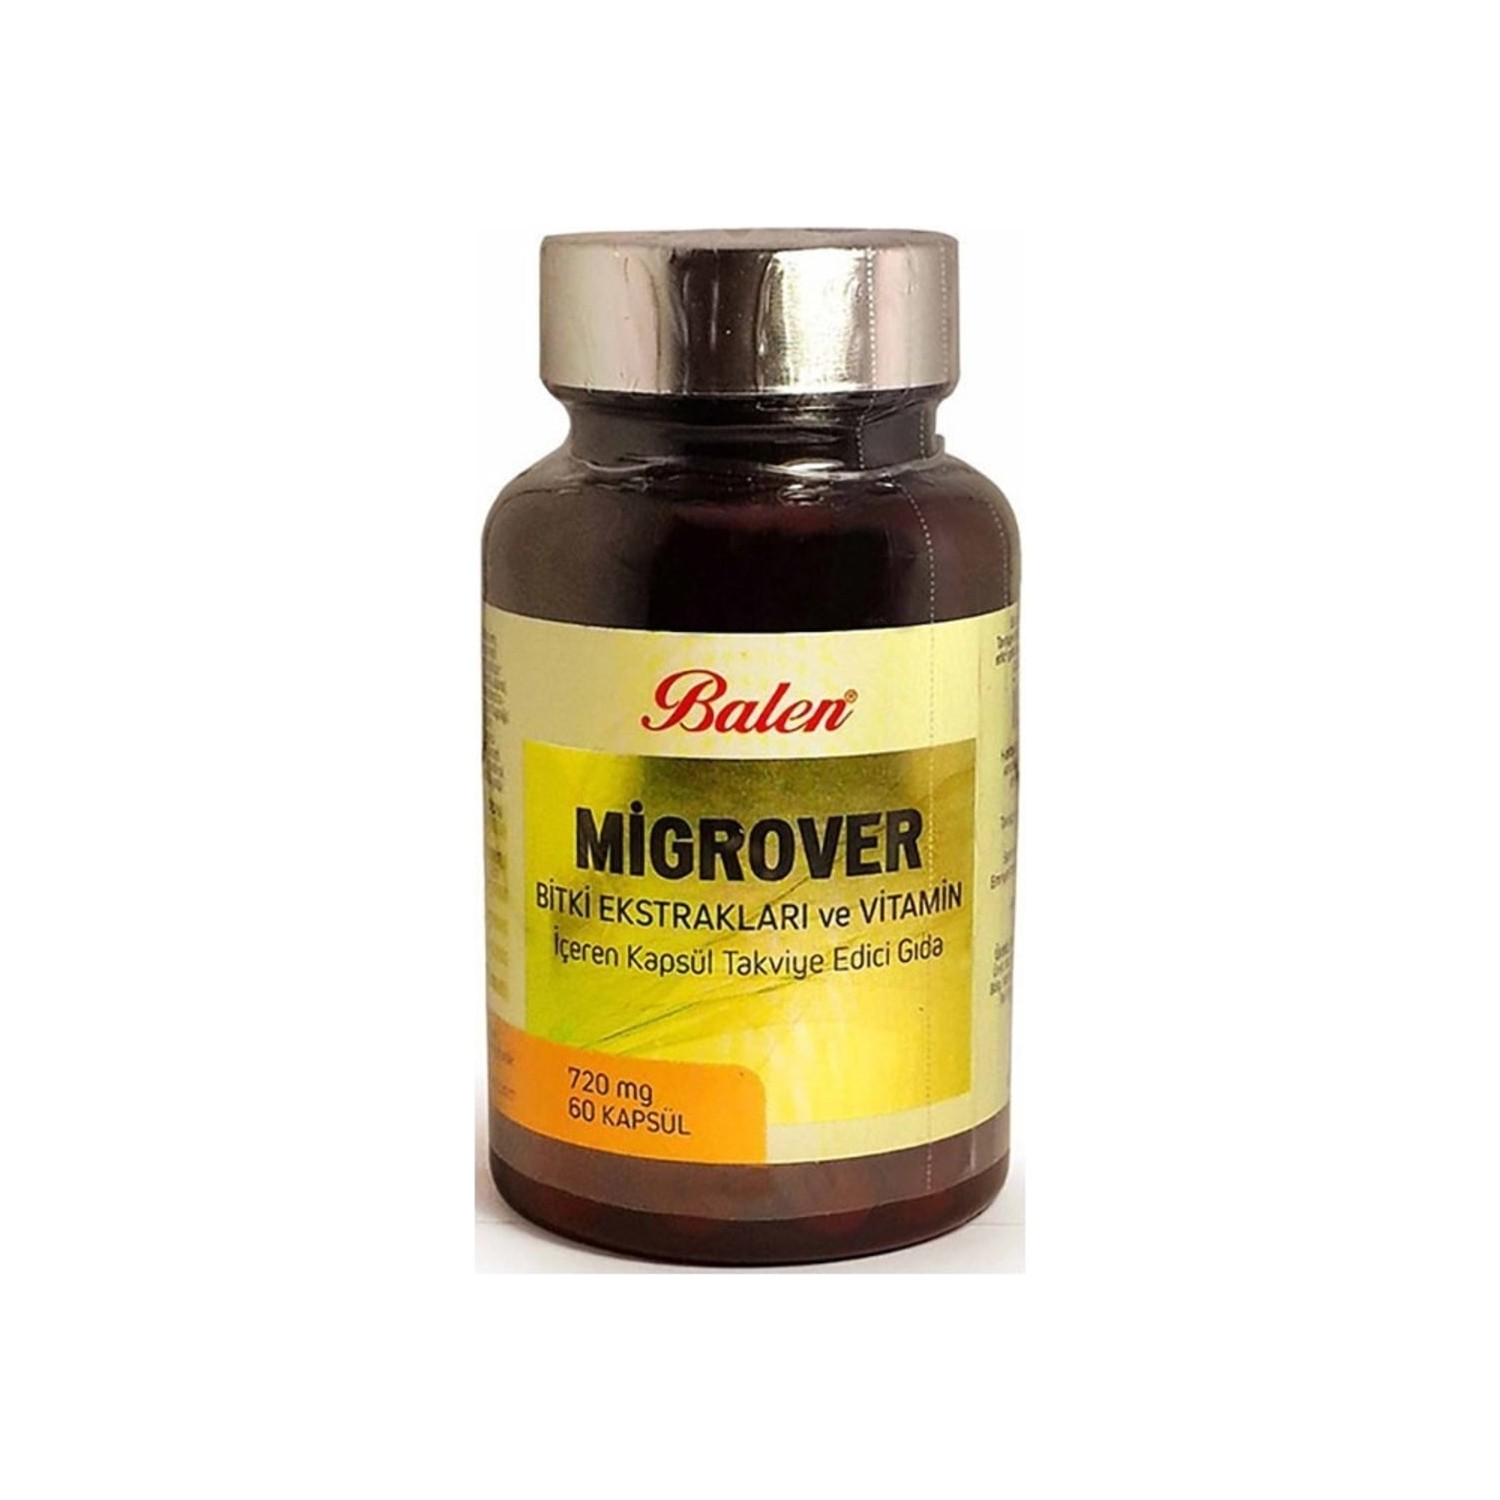 цена Капсулы Balen Migrover, содержащие растительные экстракты и витамины, 60 капсул, 720 мг